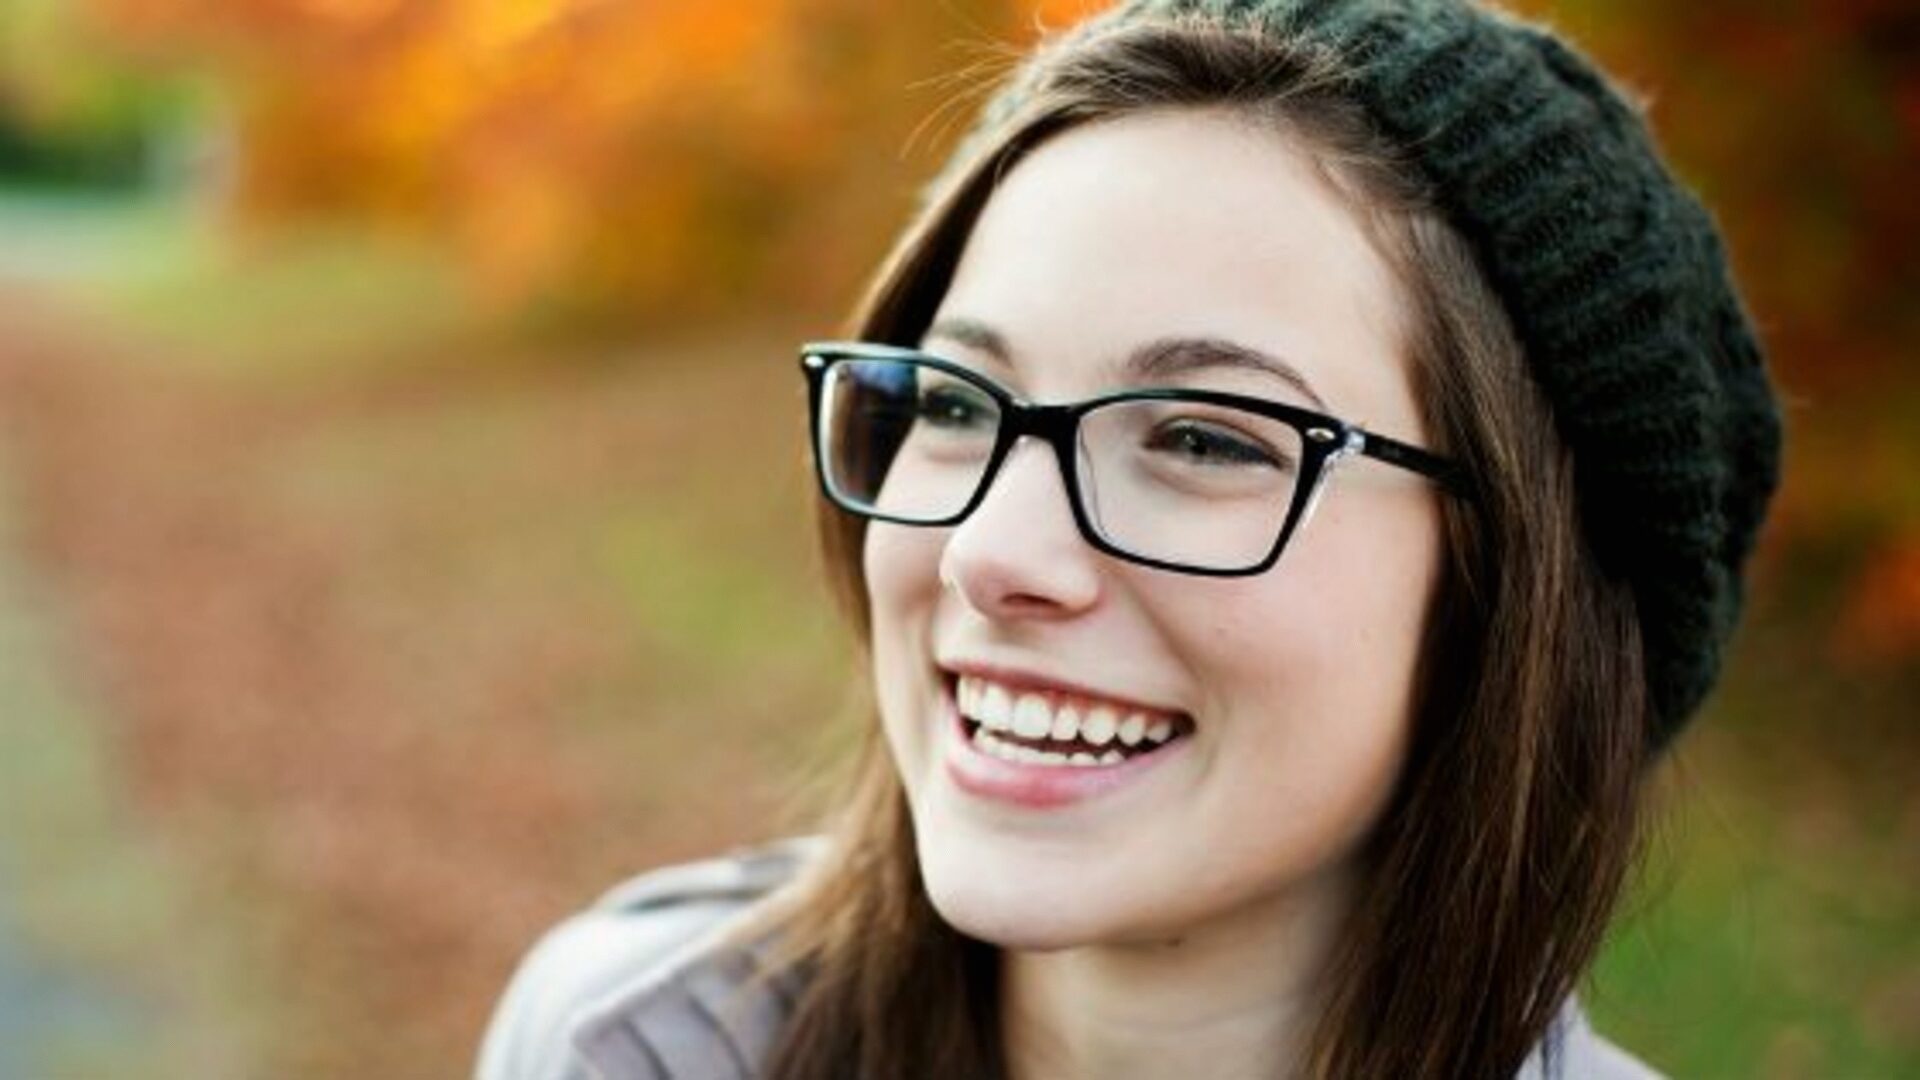 Why do men love girls in glasses?